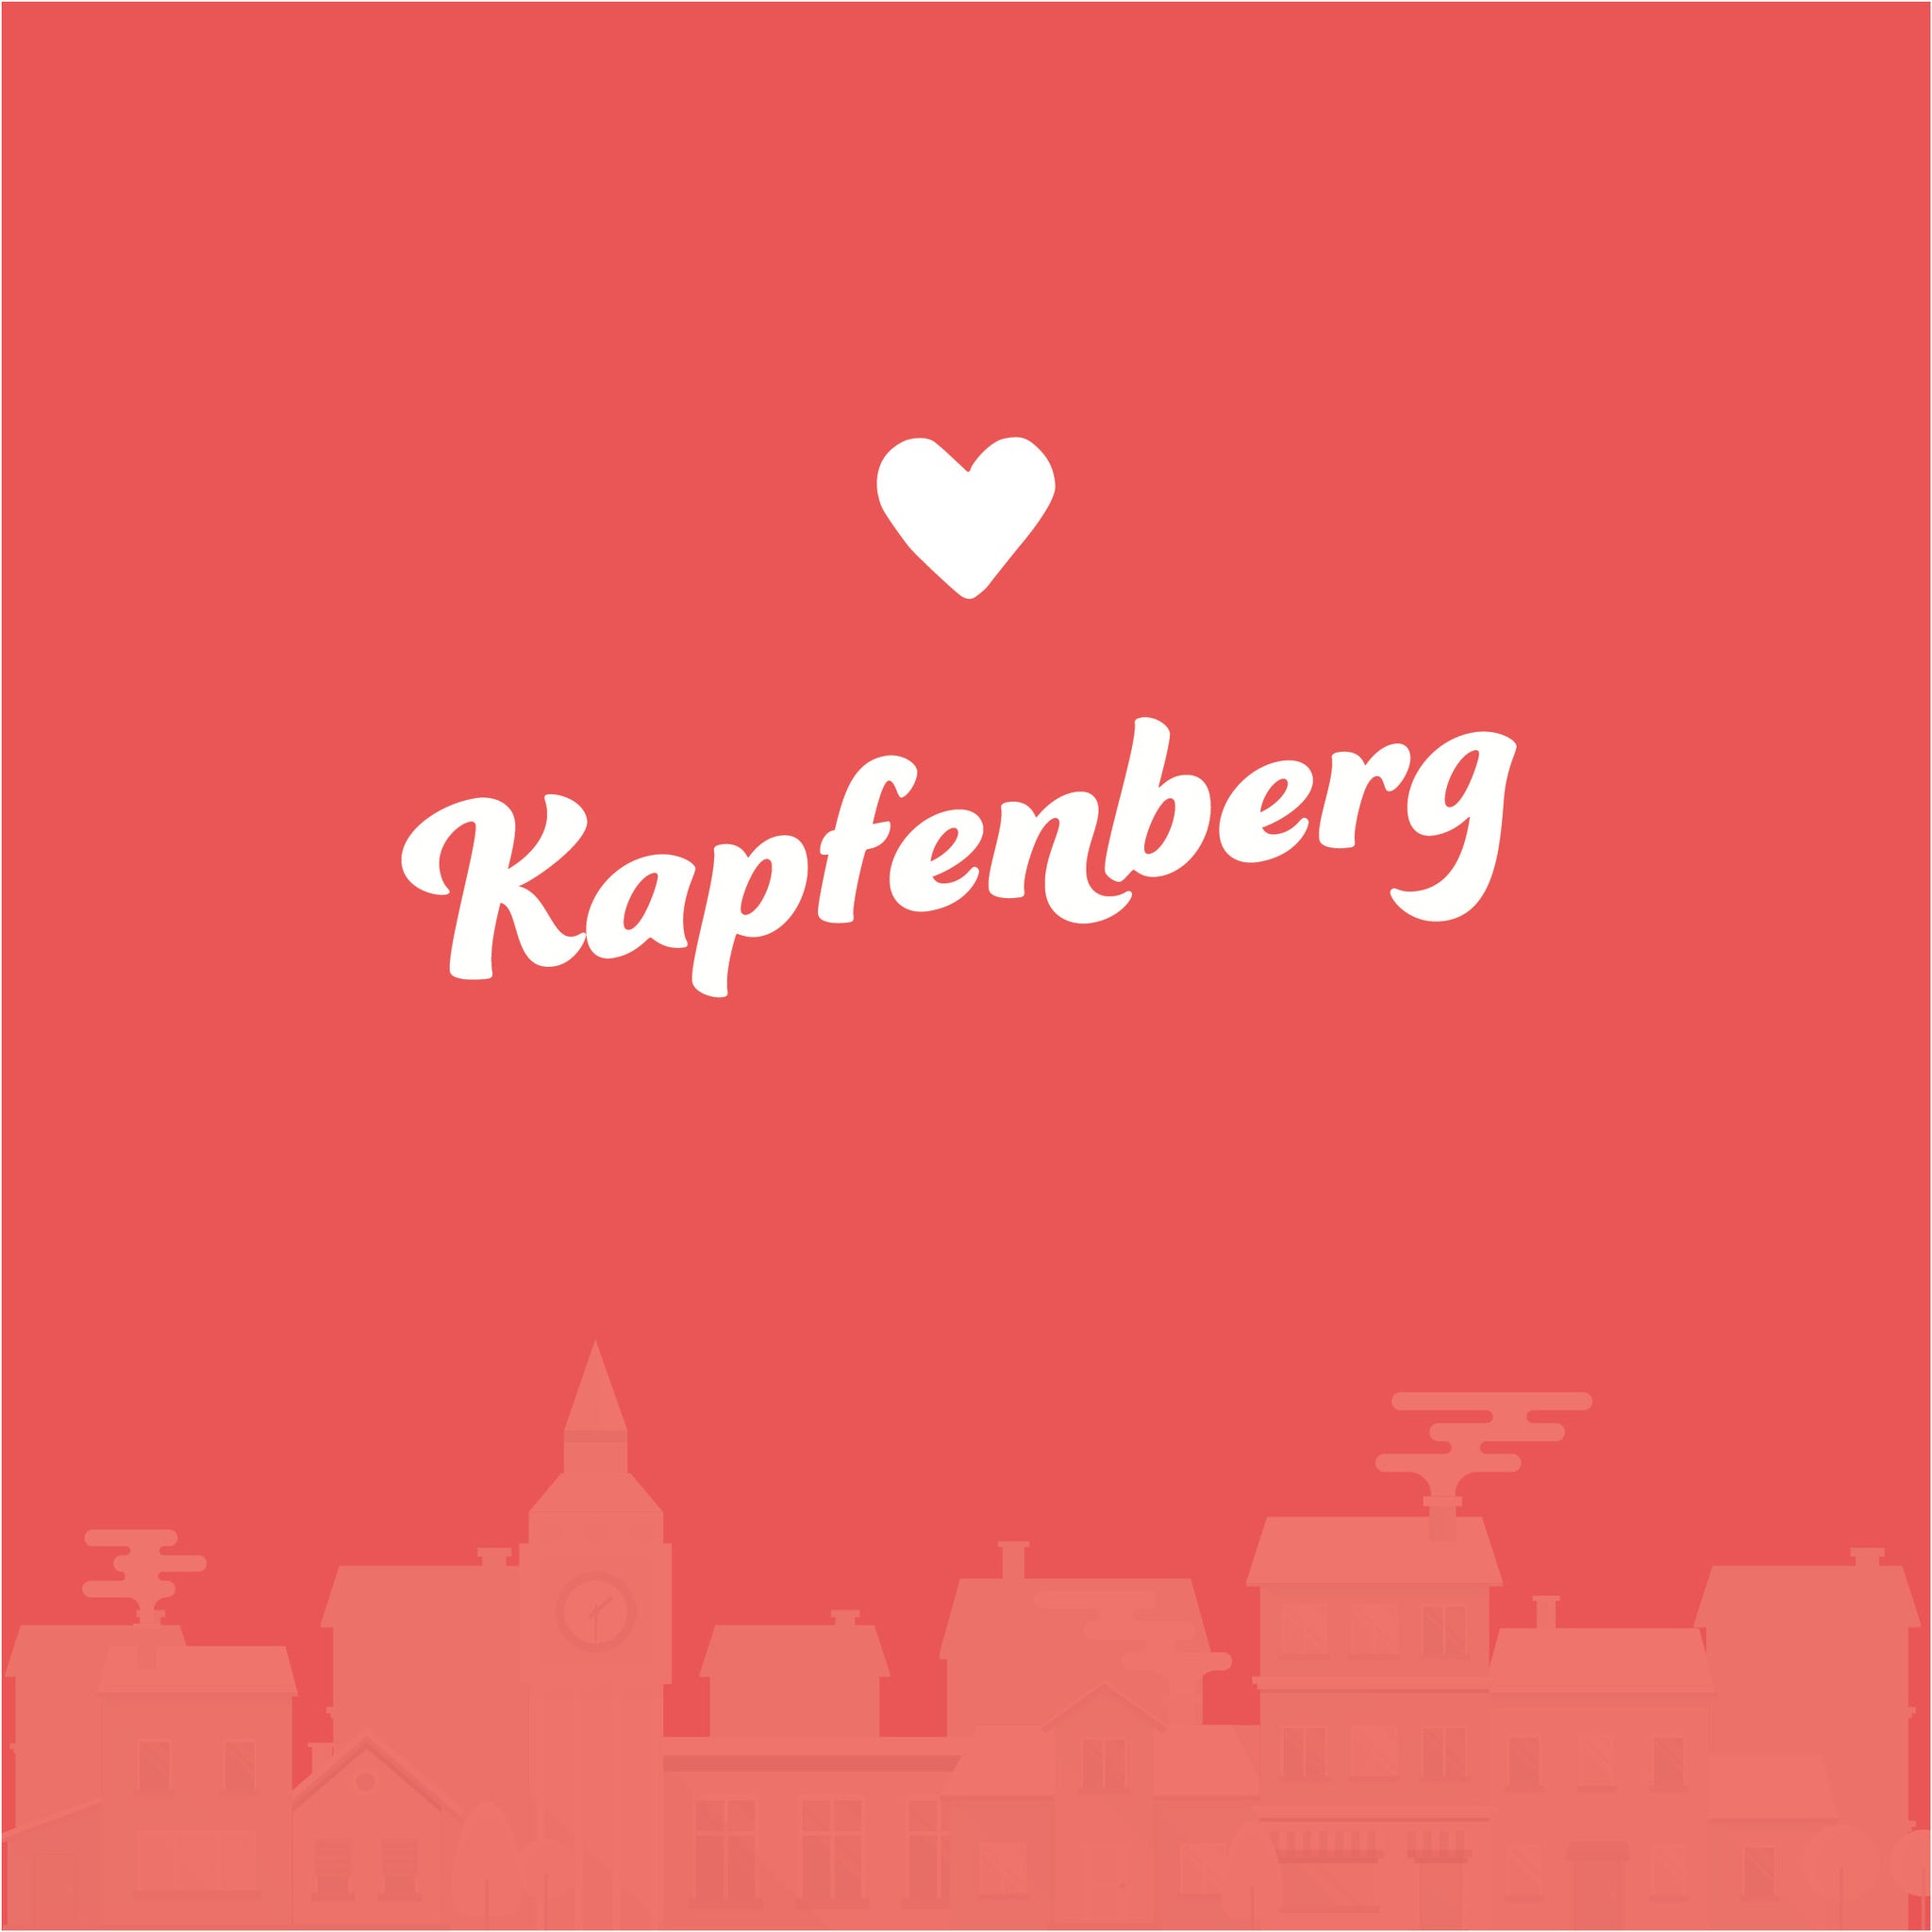 Kapfenberg